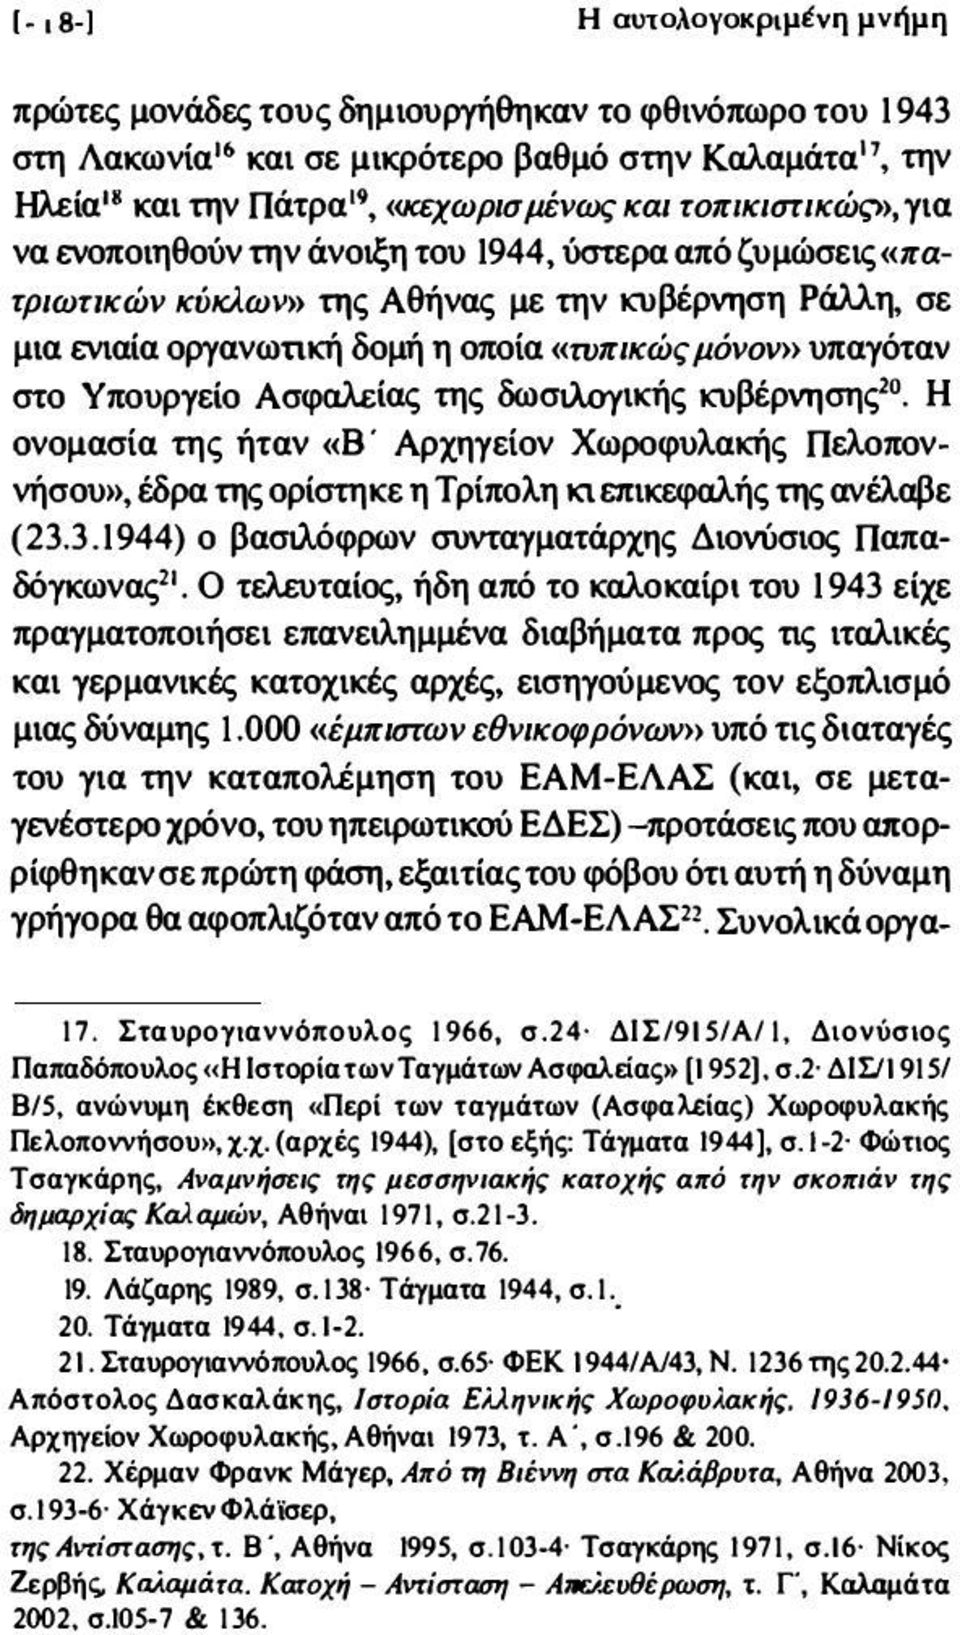 )) της Αθήνας με την κυβέρνηση Ράλλη, σε μια ενιαία οργανωτική δομή η οποία «τυπικώς μόνοv») υπαγόταν στο Υπουργείο Ασφαλείας της δωσιλουικής κυβέρνησης20_ Η ονομασία της ήταν «Β' Αρχηγείον